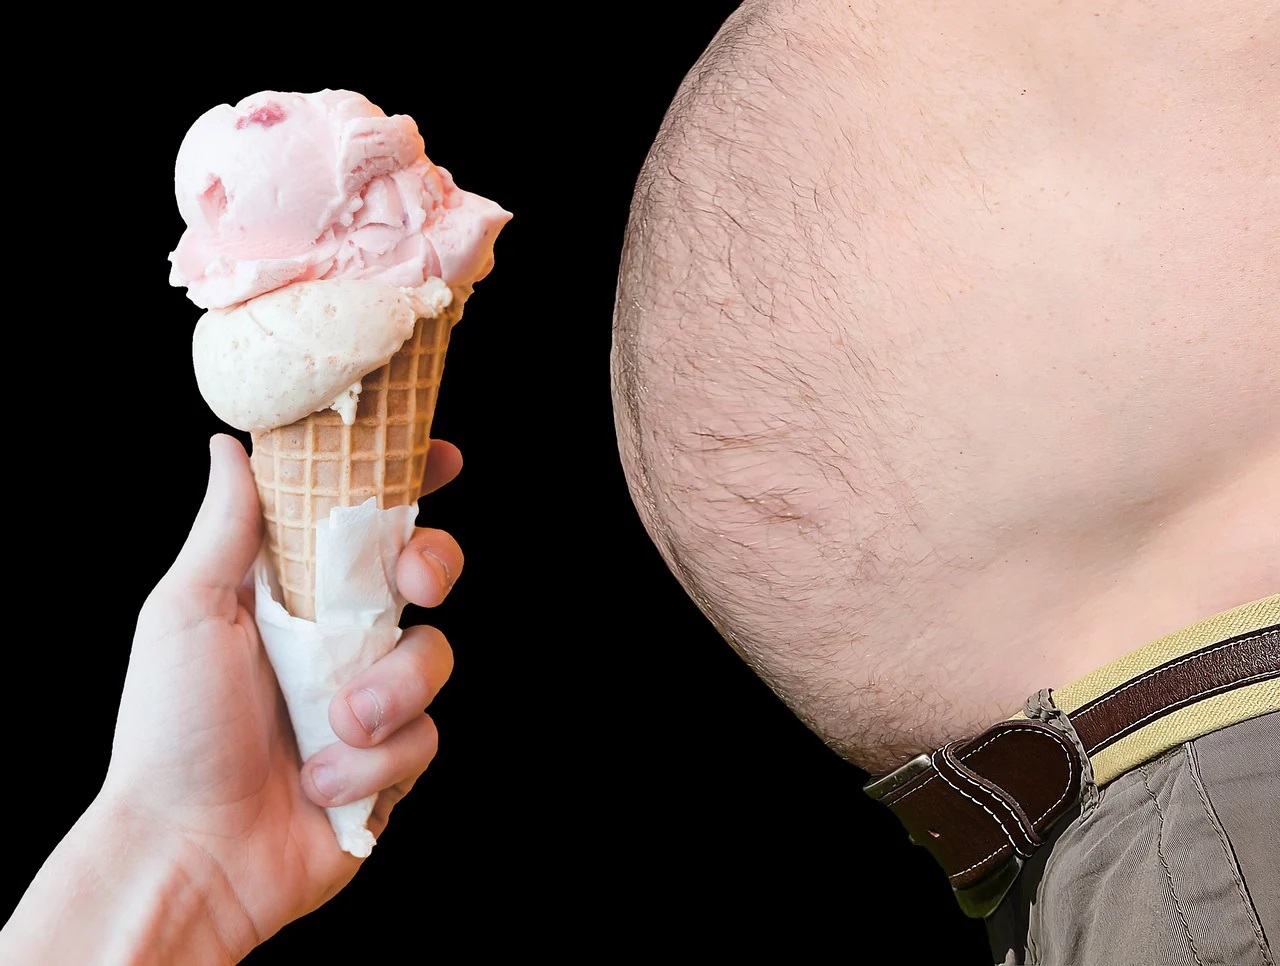 Obezita